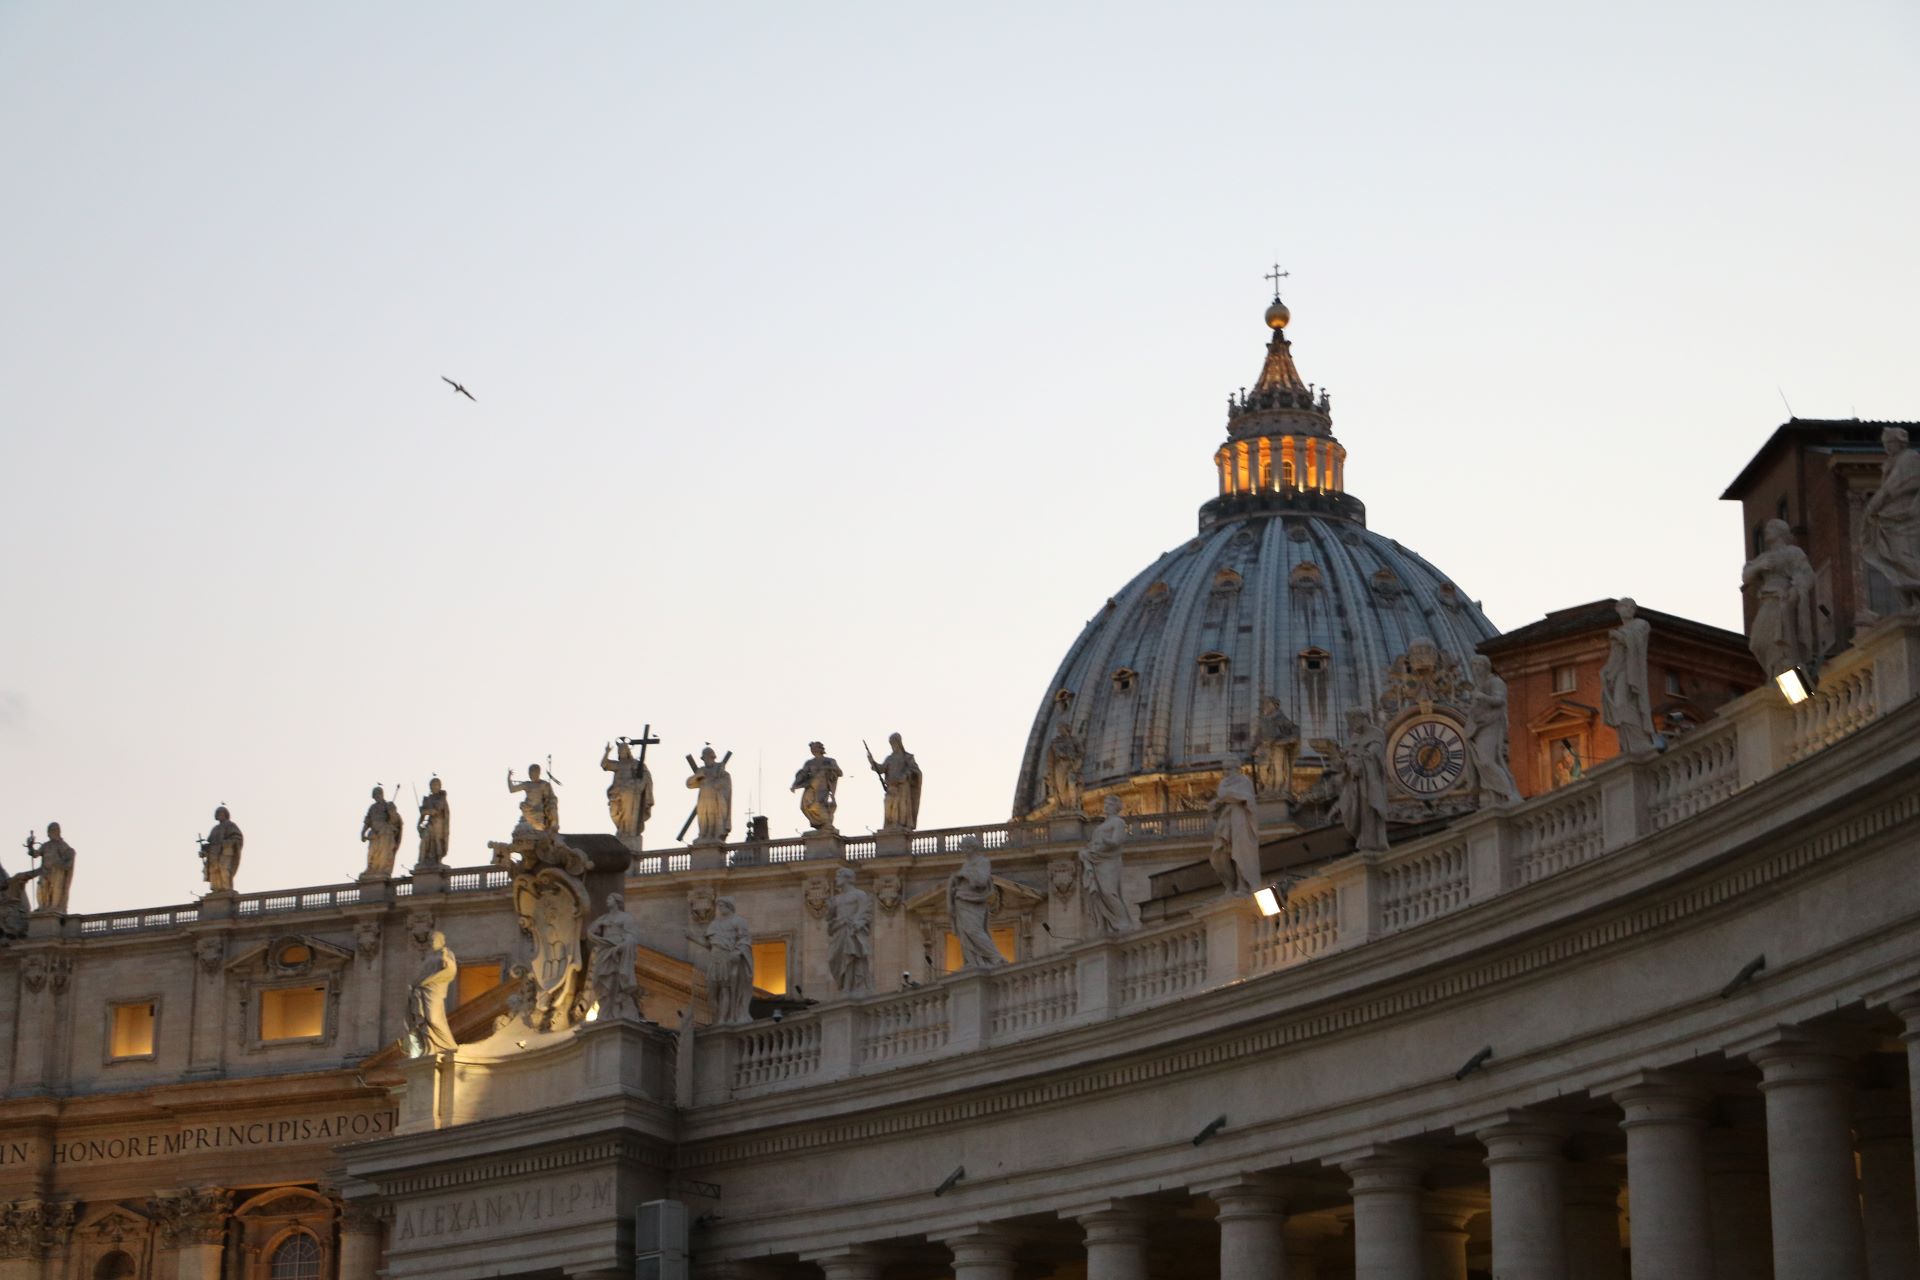 El Vaticano y su pesada carga de pederastia